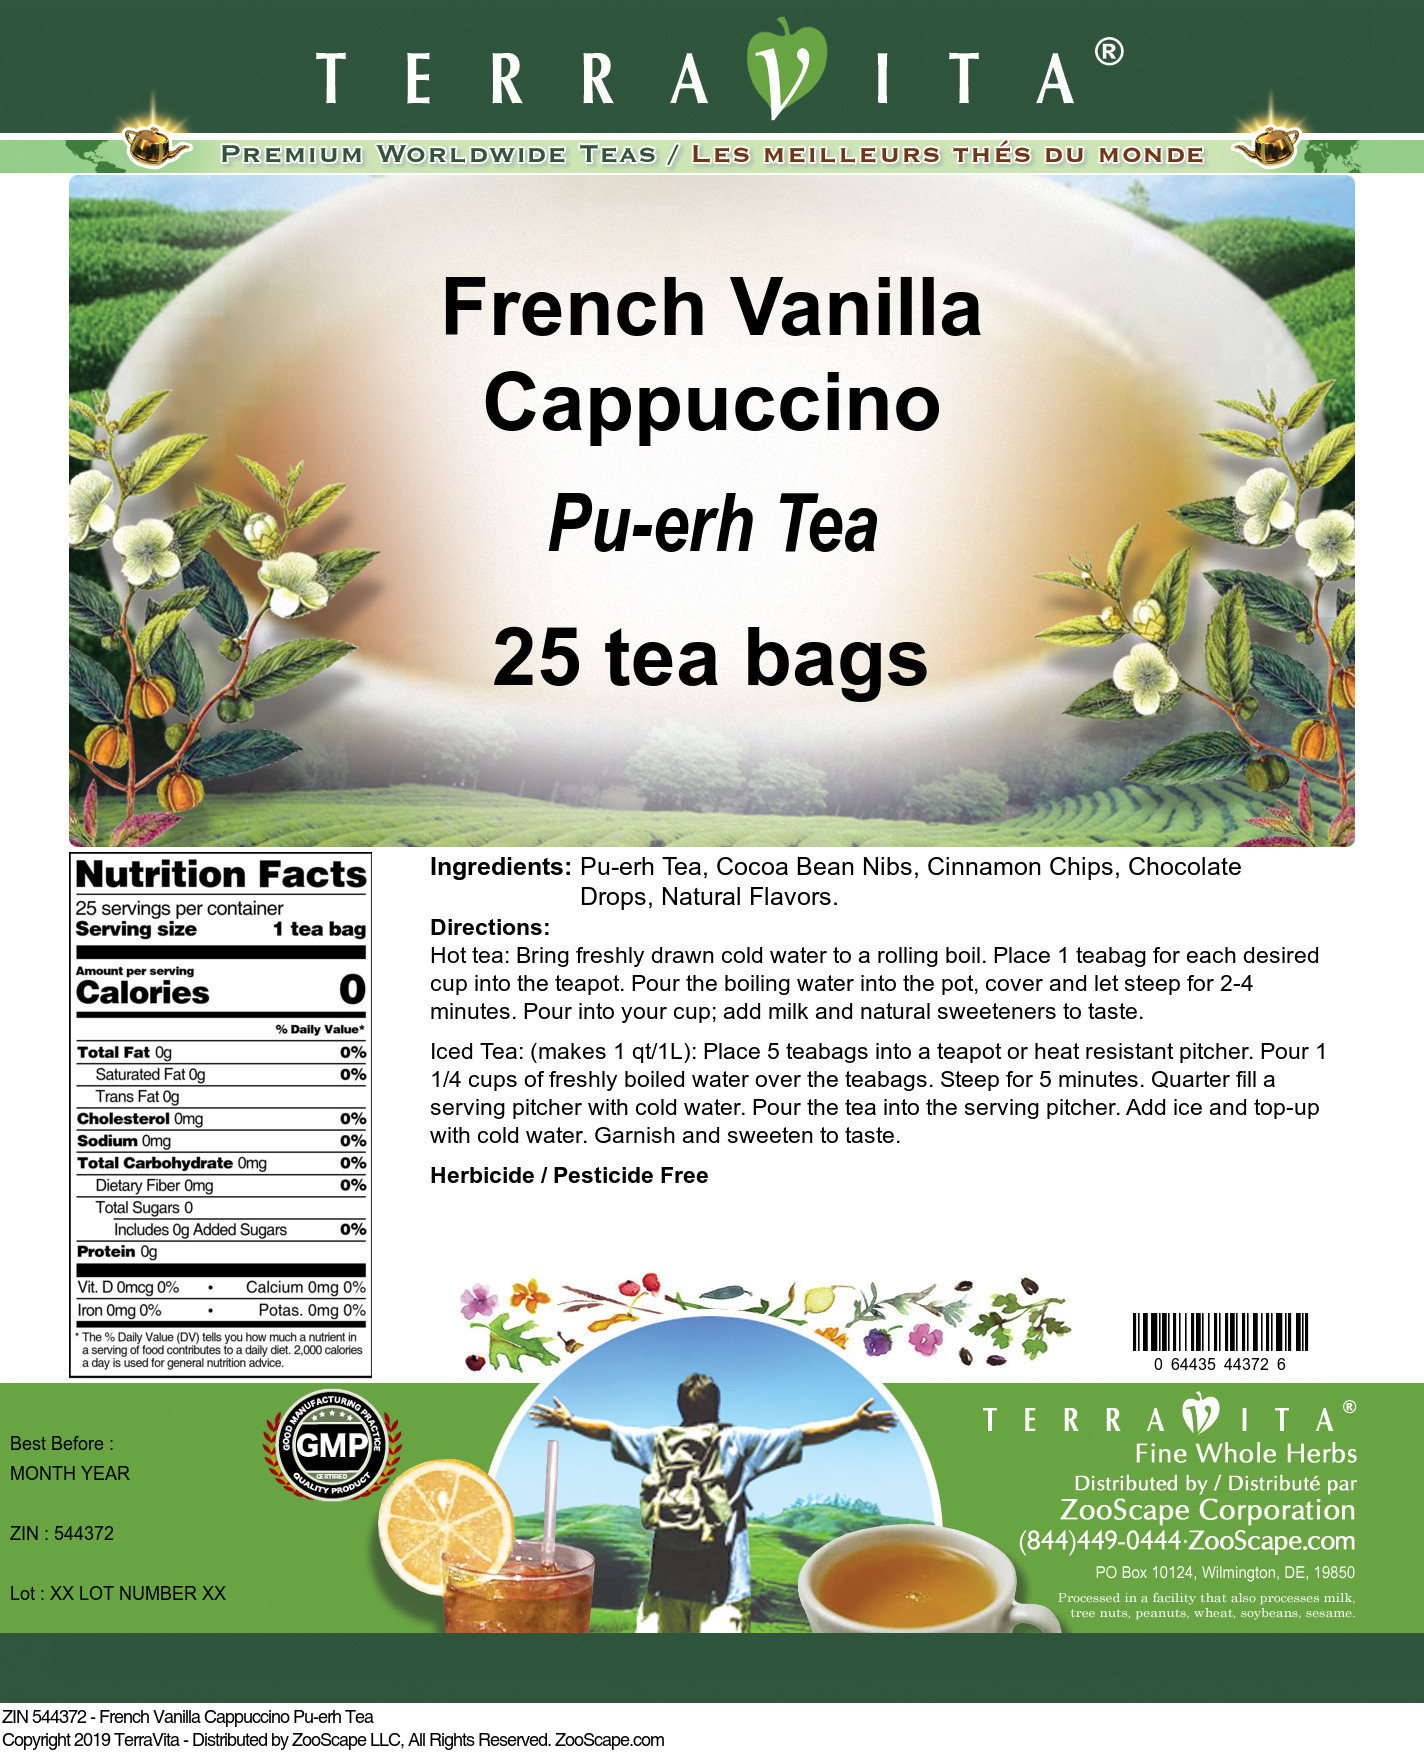 French Vanilla Cappuccino Pu-erh Tea - Label